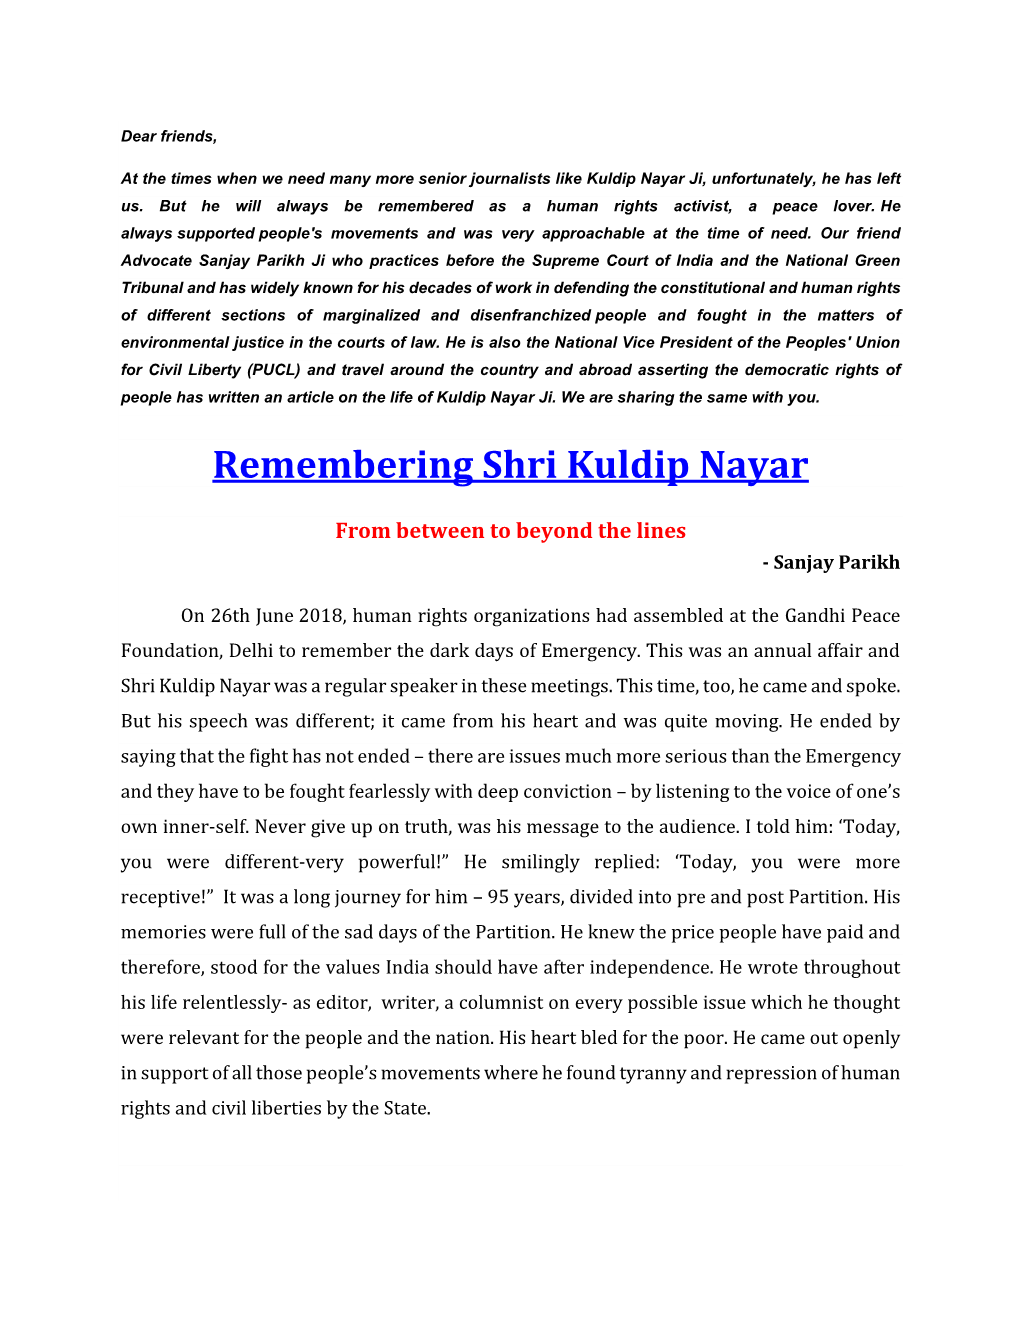 Remembering Shri Kuldip Nayar